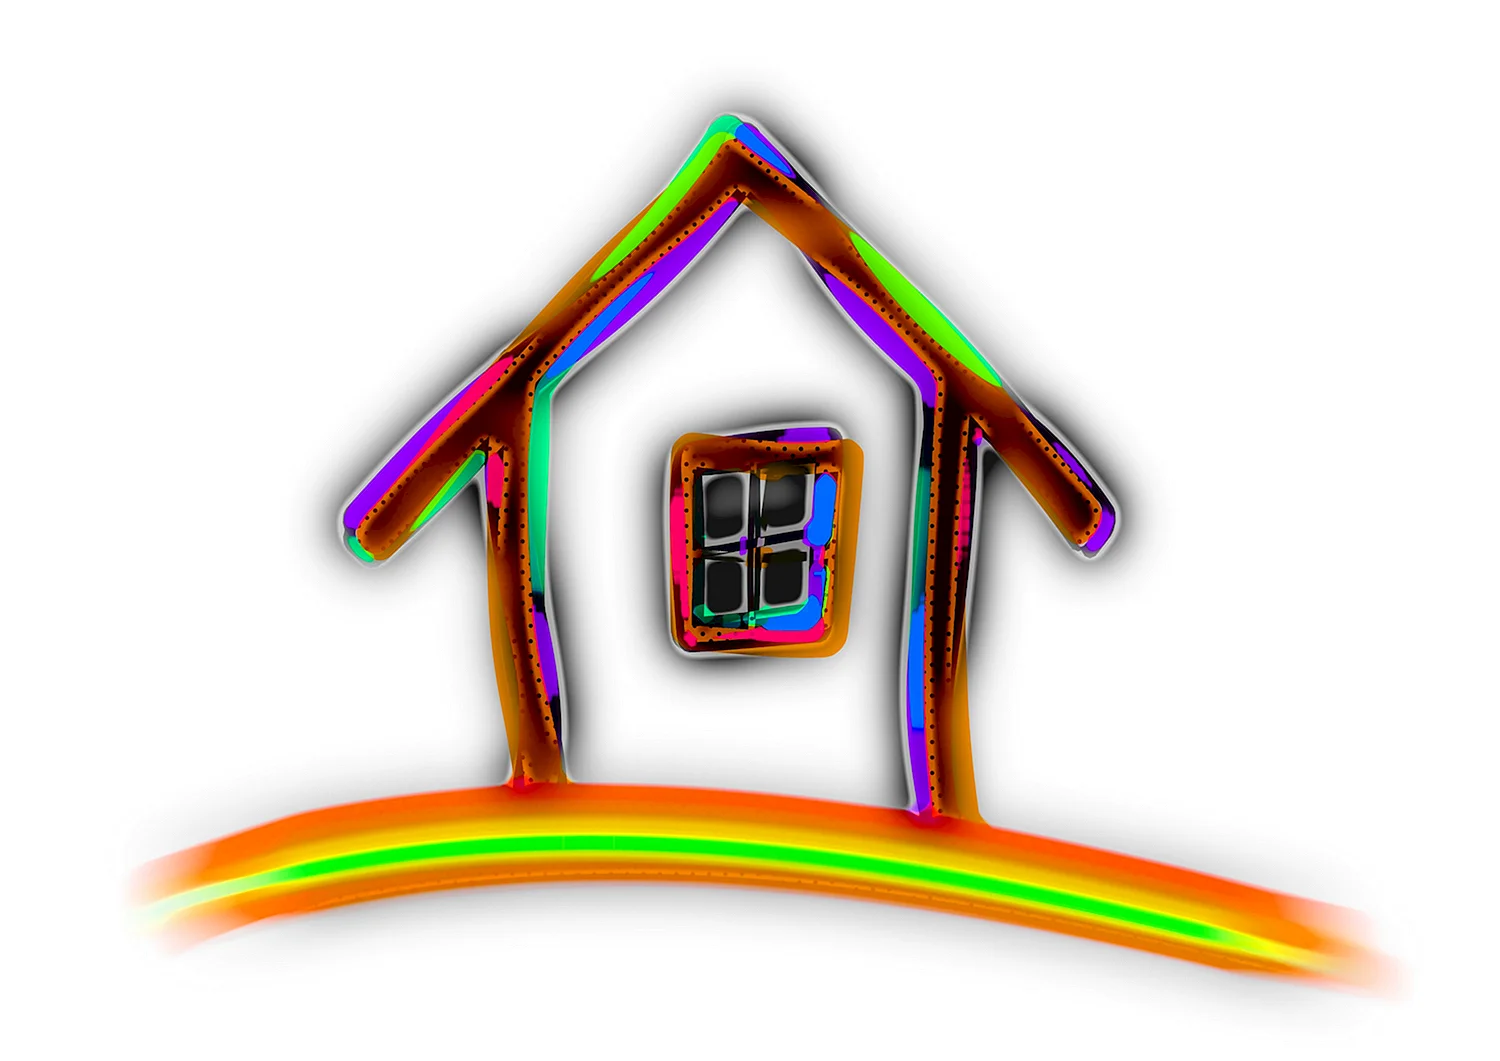 Логотип дом